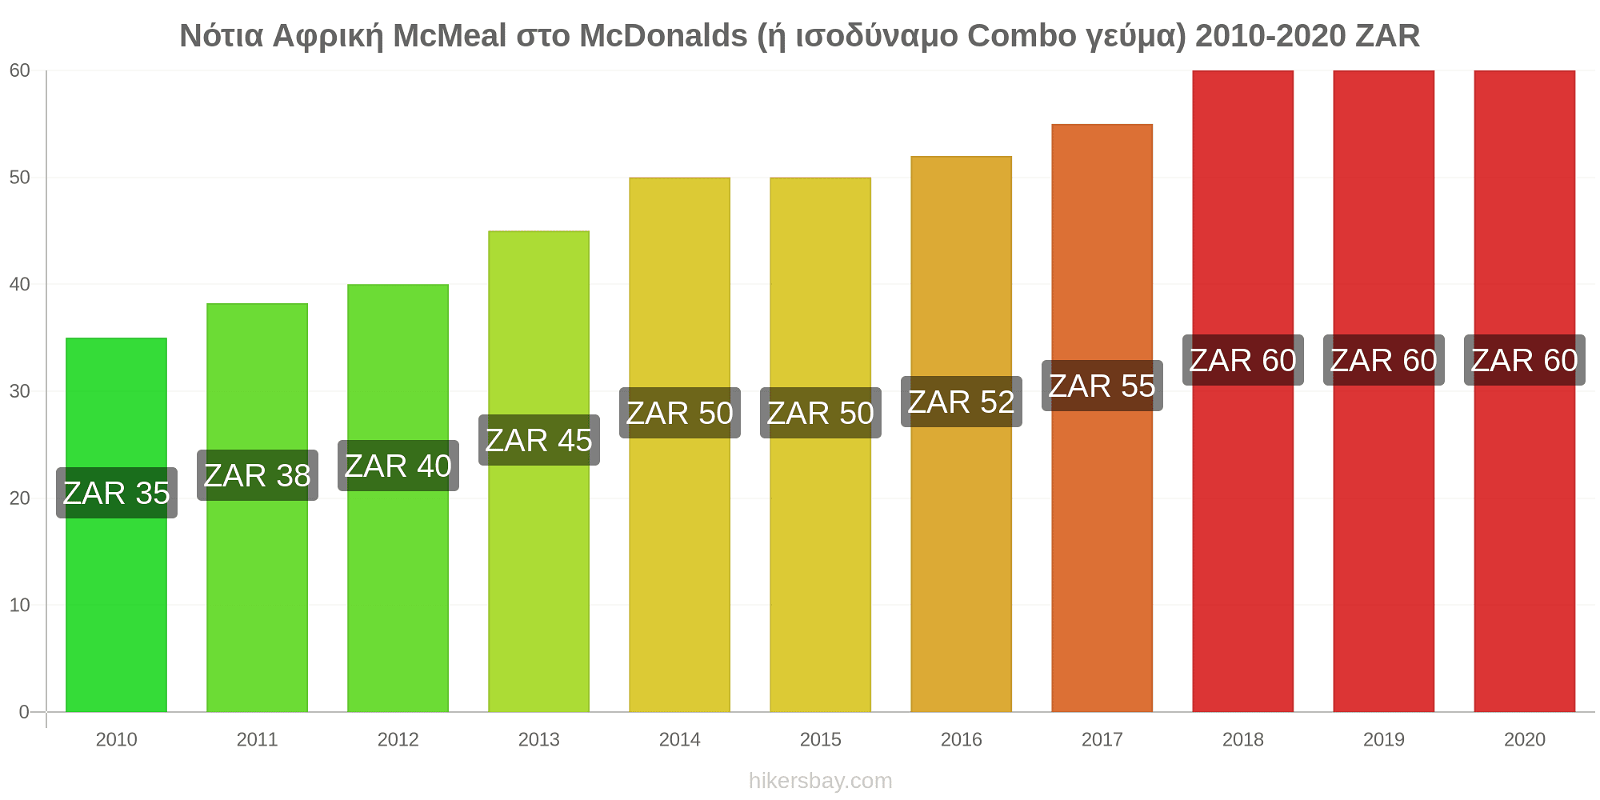 Νότια Αφρική αλλαγές τιμών McMeal στο McDonalds (ή ισοδύναμο Combo γεύμα) hikersbay.com